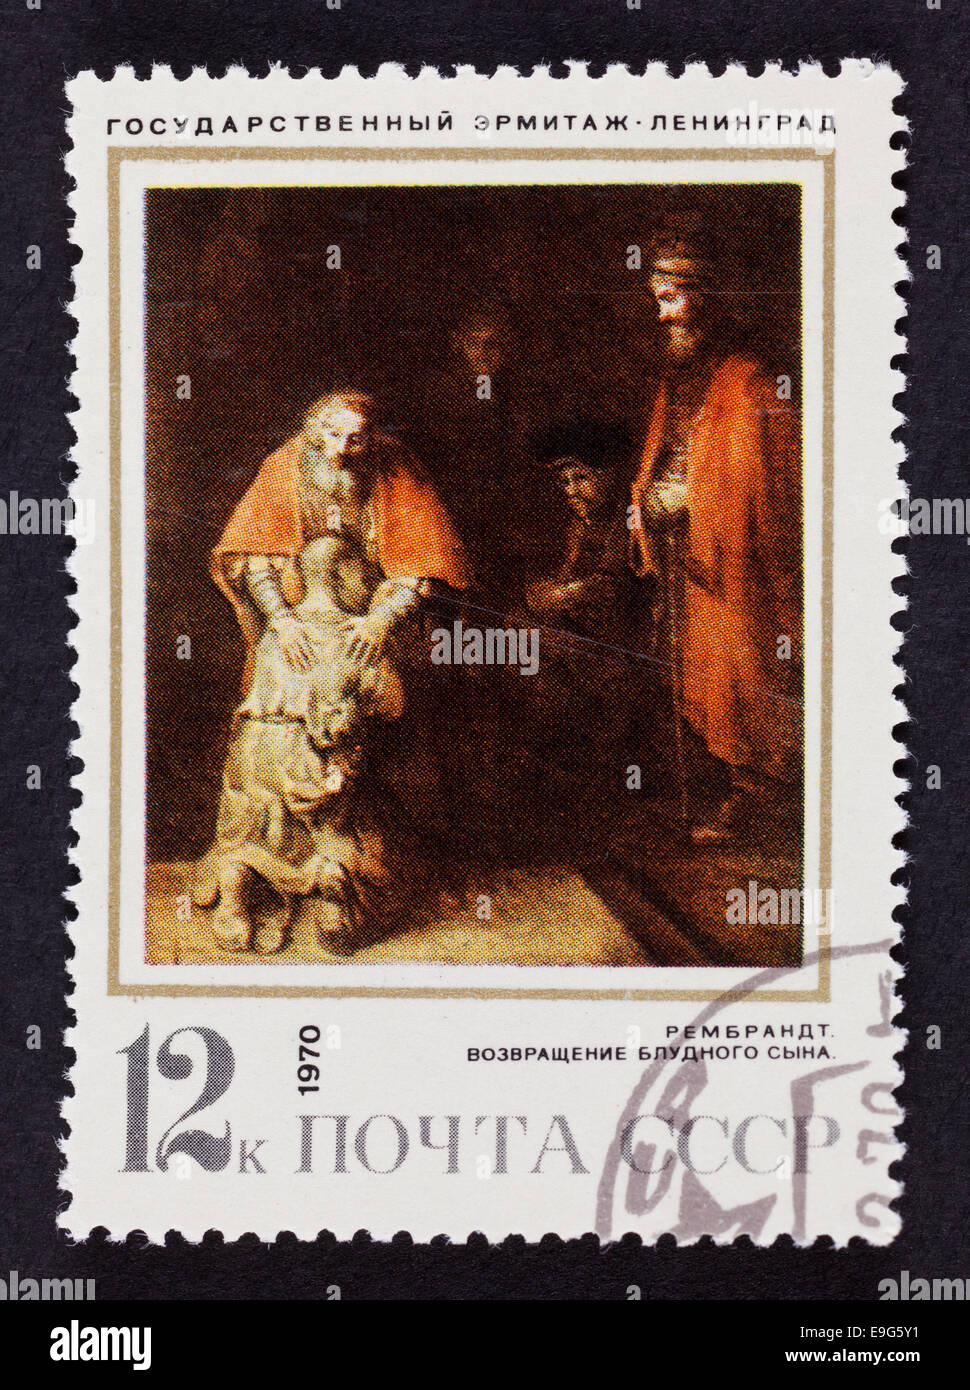 USSR-Briefmarke "The Return of Prodical Sohn" von Rembrandt. Jahr 1970. Schwarzer Hintergrund. Stockfoto